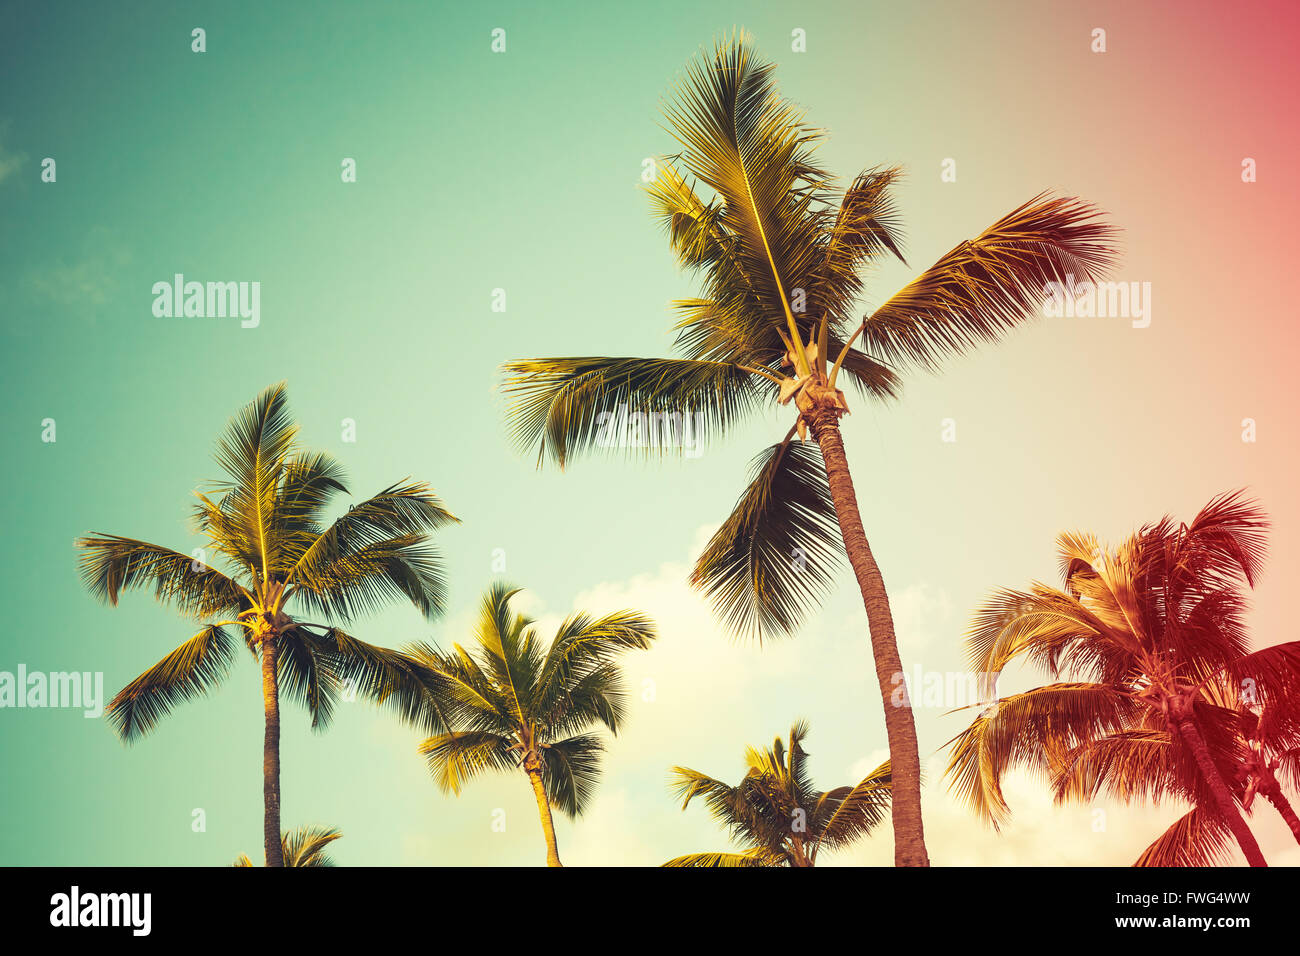 Des cocotiers sur fond de ciel lumineux. Style vintage, photo avec effet de filtre de correction tonale colorés Banque D'Images